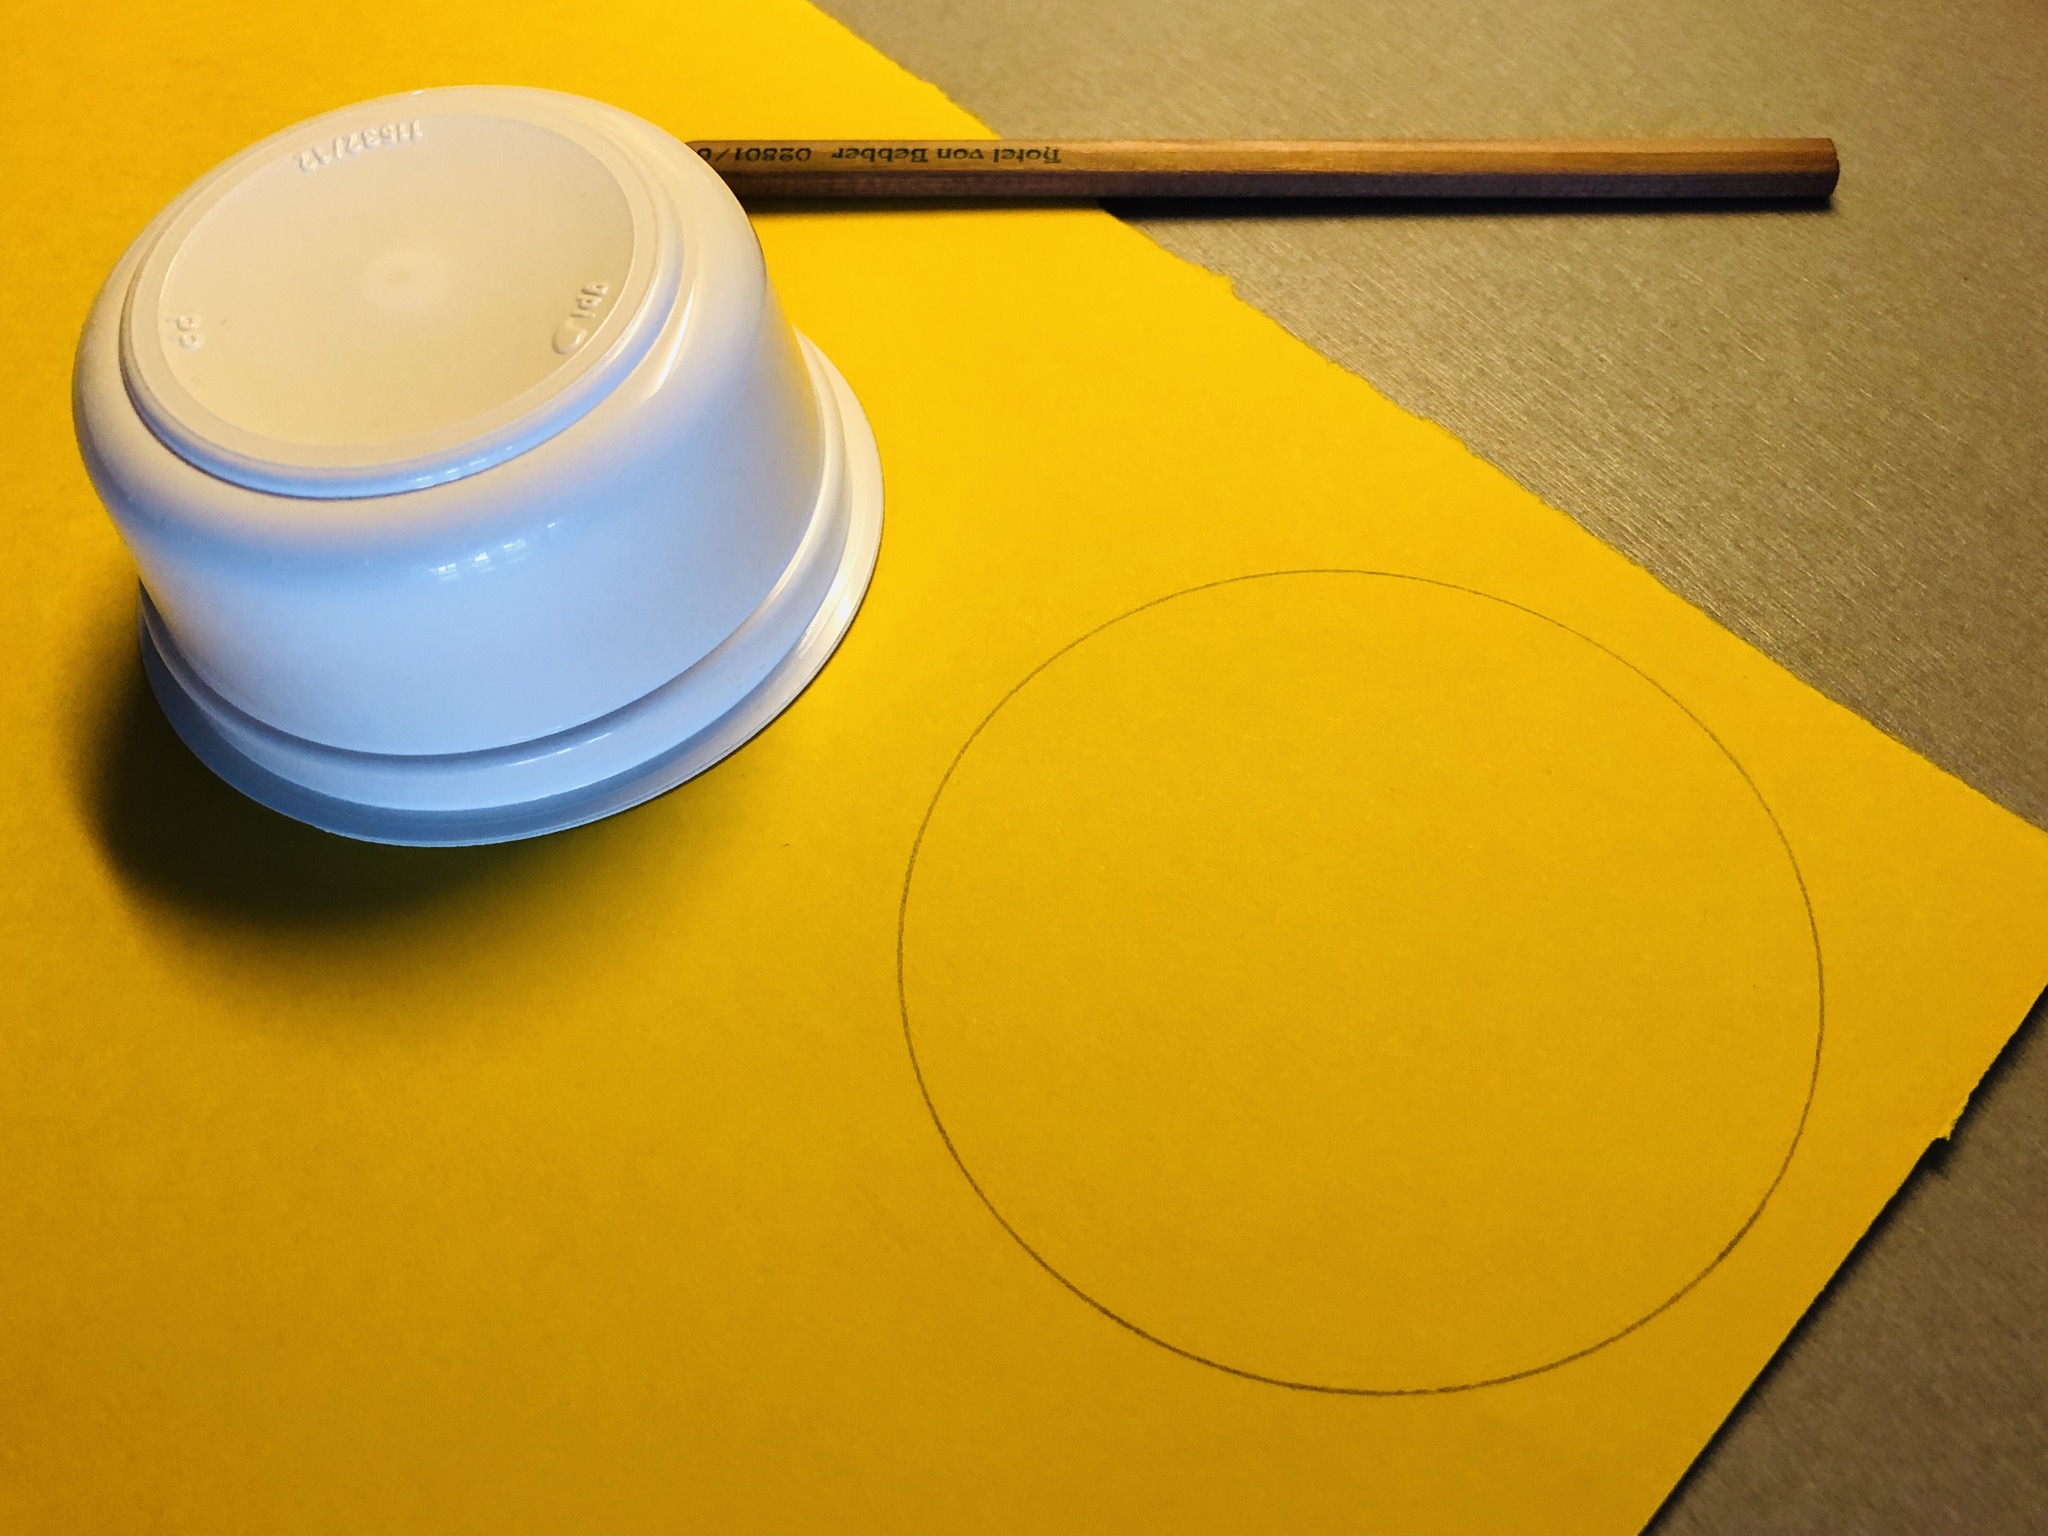 Bild zum Schritt 1 für das Bastel- und DIY-Abenteuer für Kinder: 'Malt einen Kreis auf das Tonpapier in der Größe eurer...'